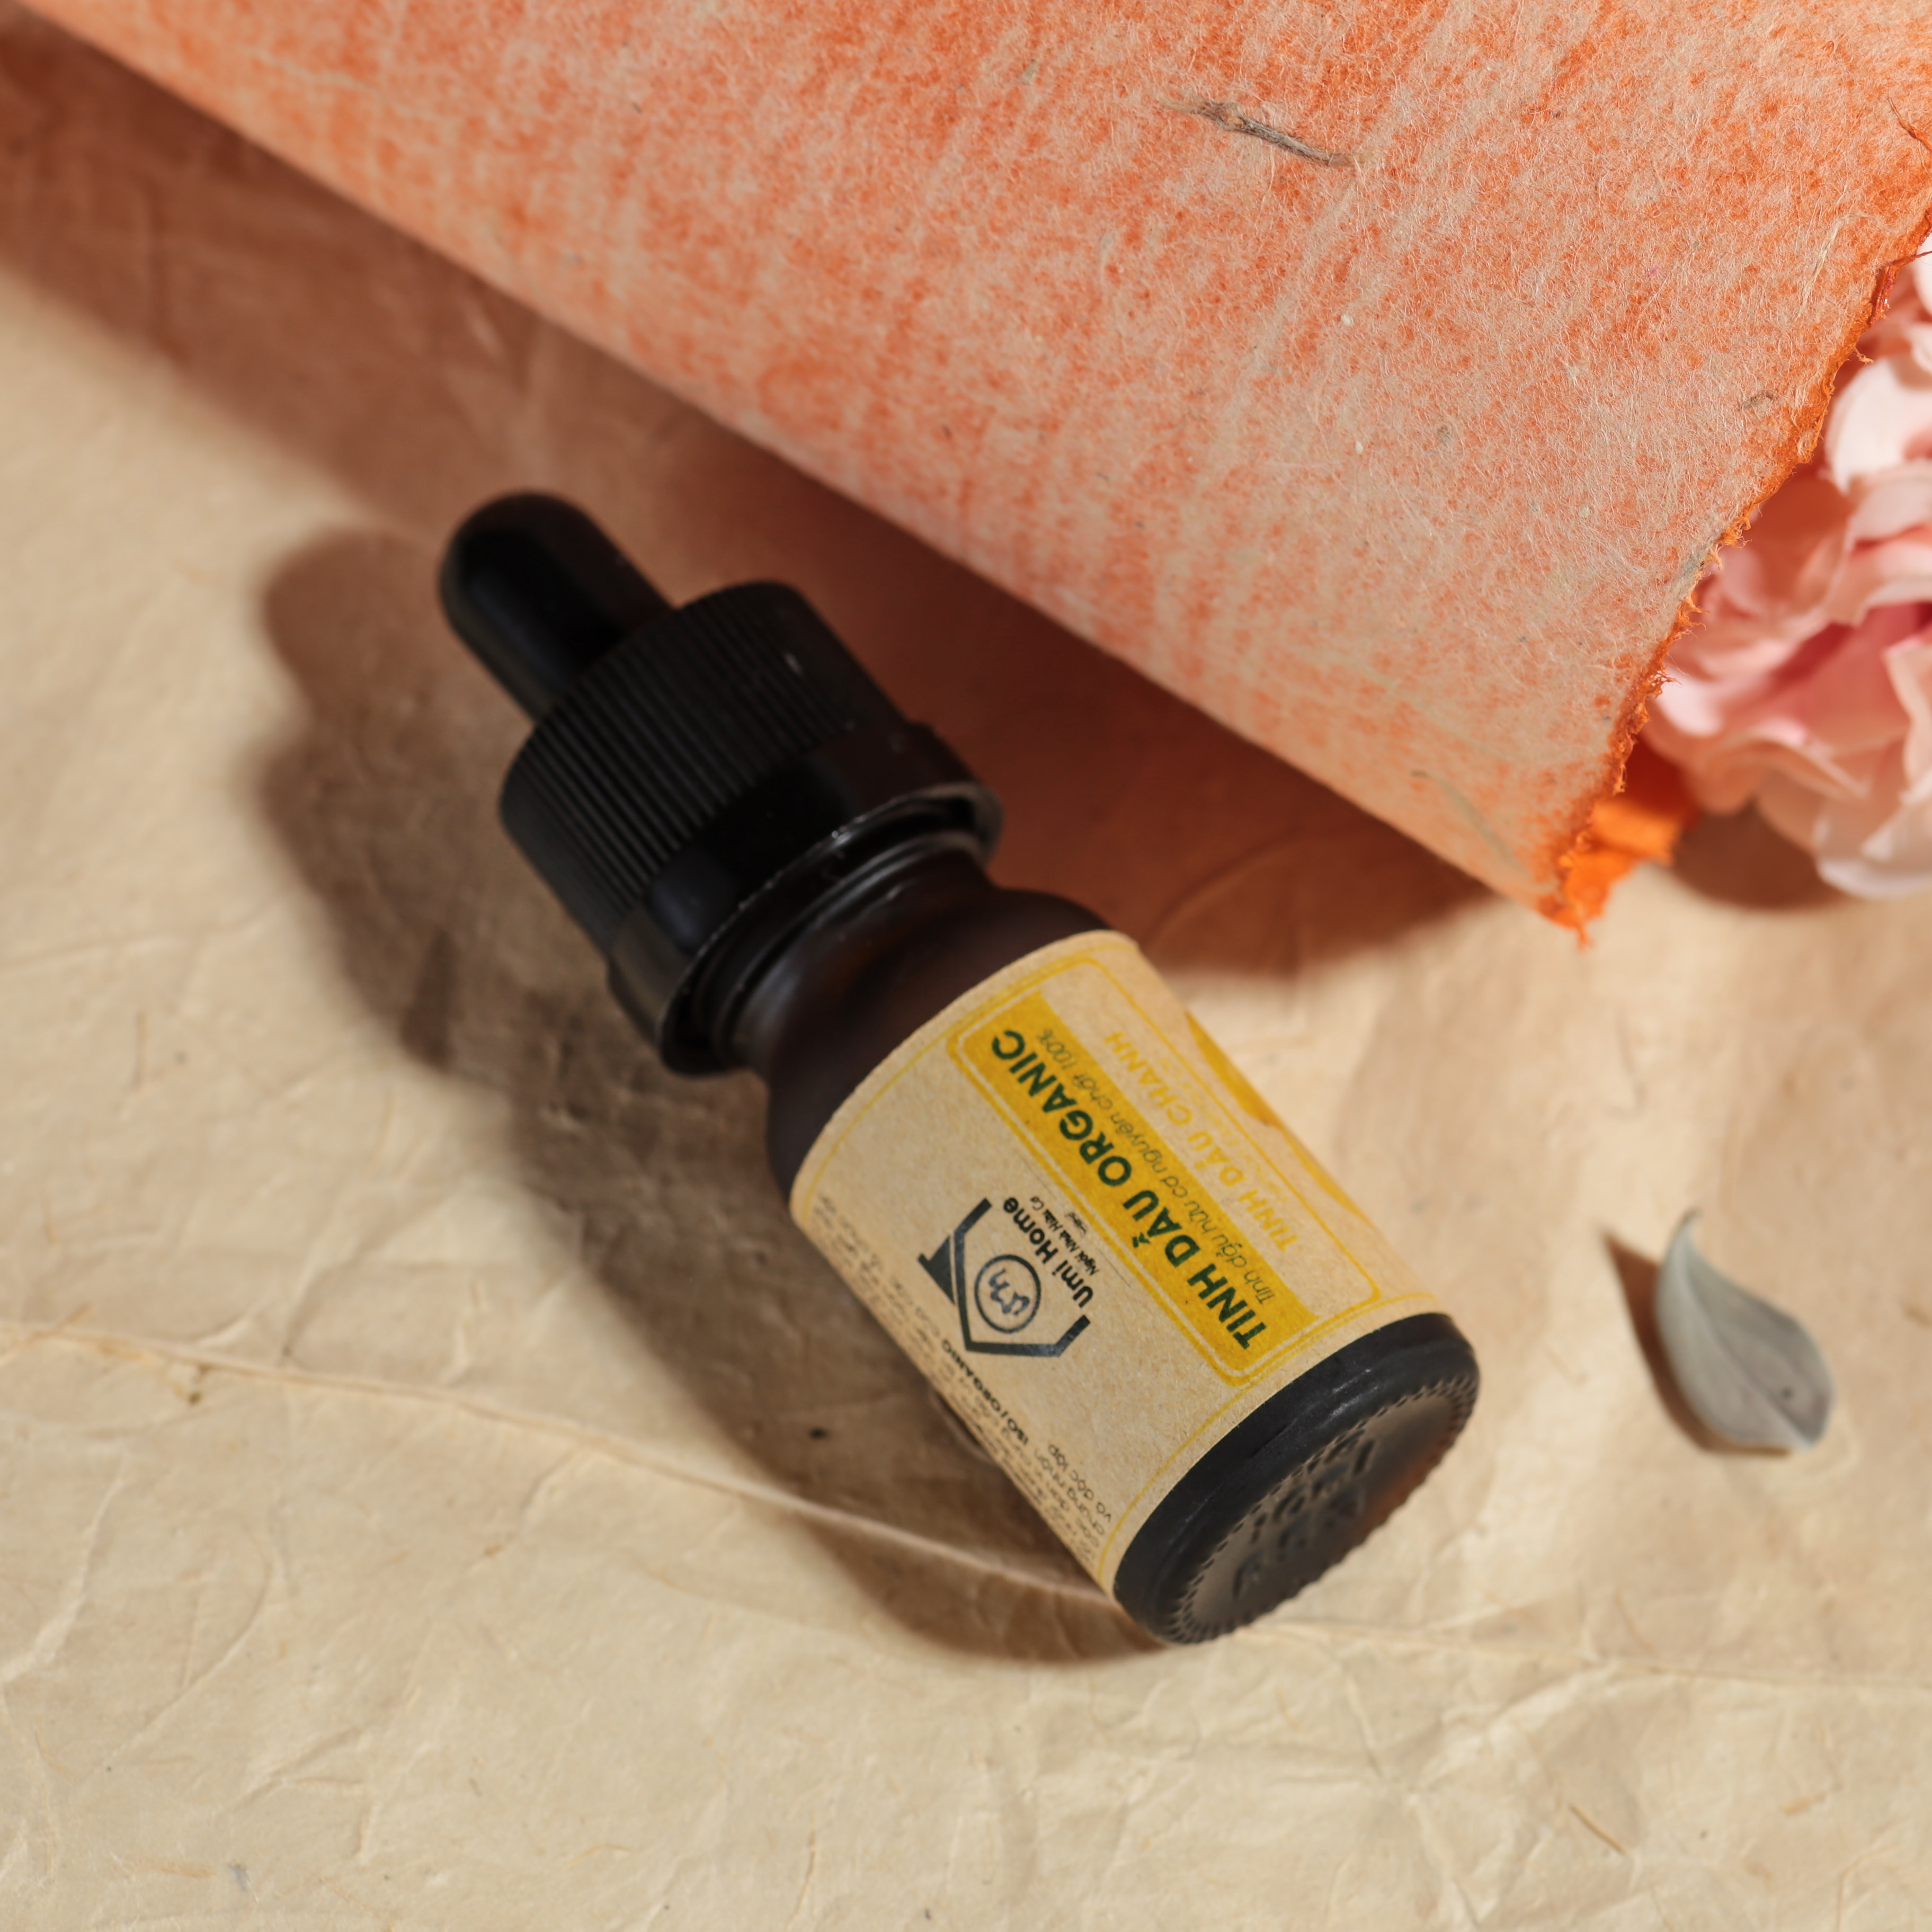 Tinh Dầu Chanh Nguyên Chất (10ml) UMIHOME - Lime essential oil